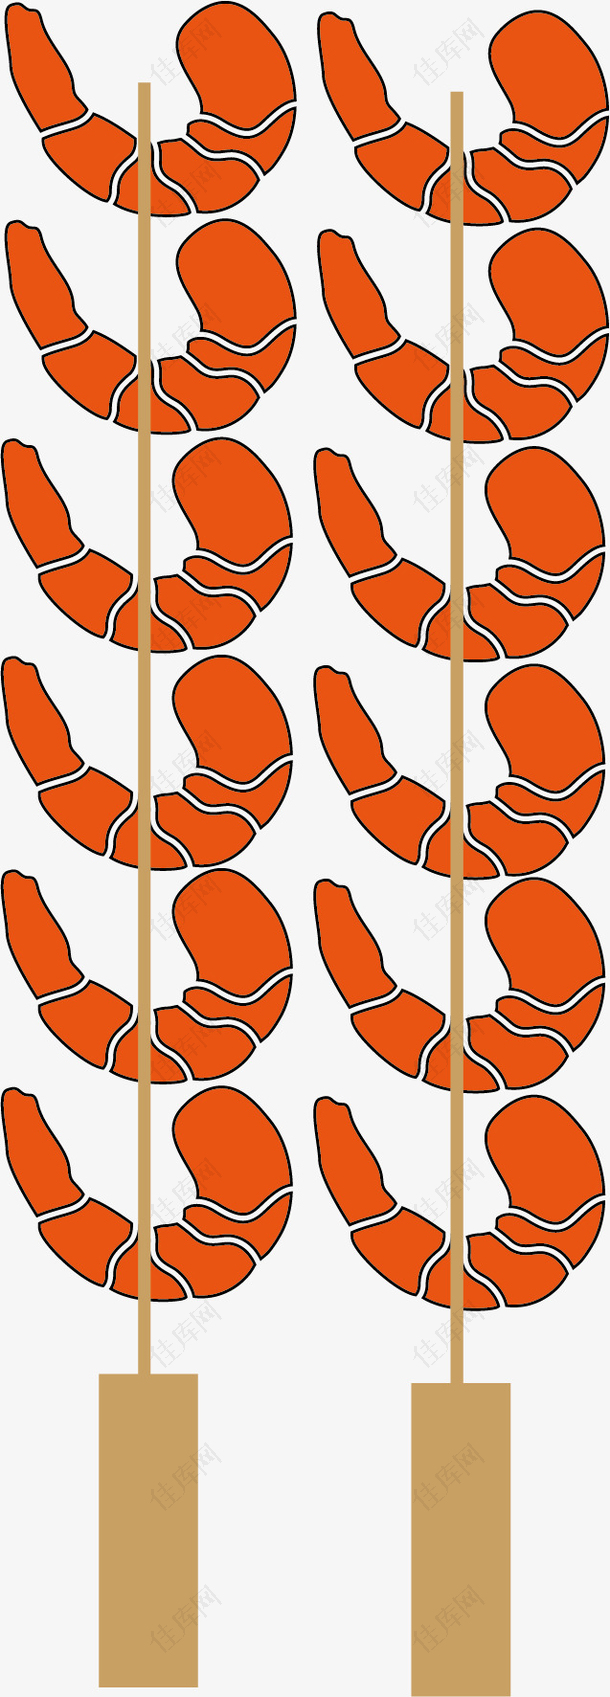 卡通手绘烤虾串串